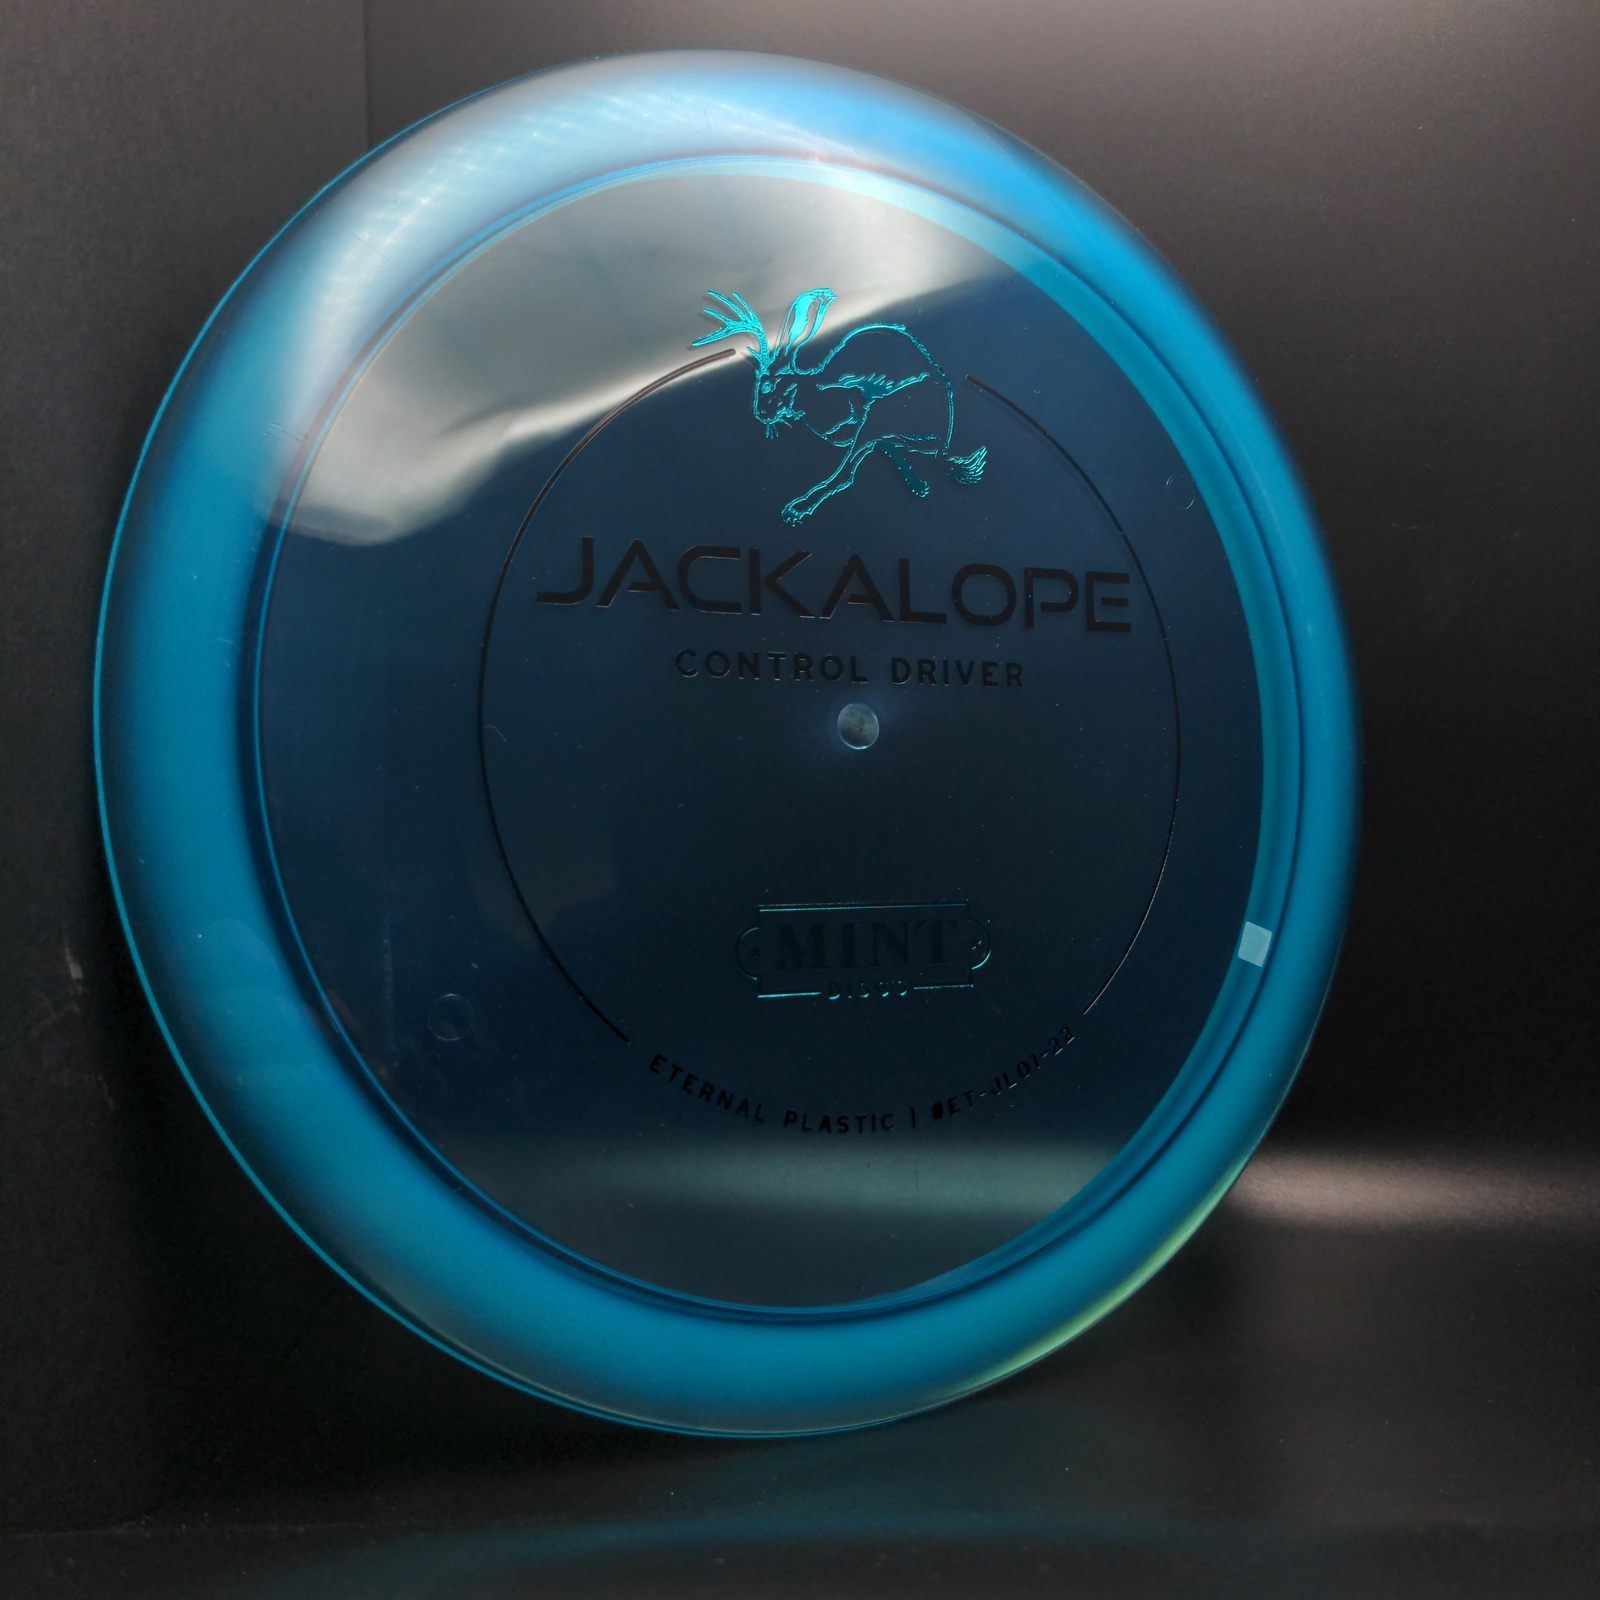 Eternal Jackalope First Run MINT Discs